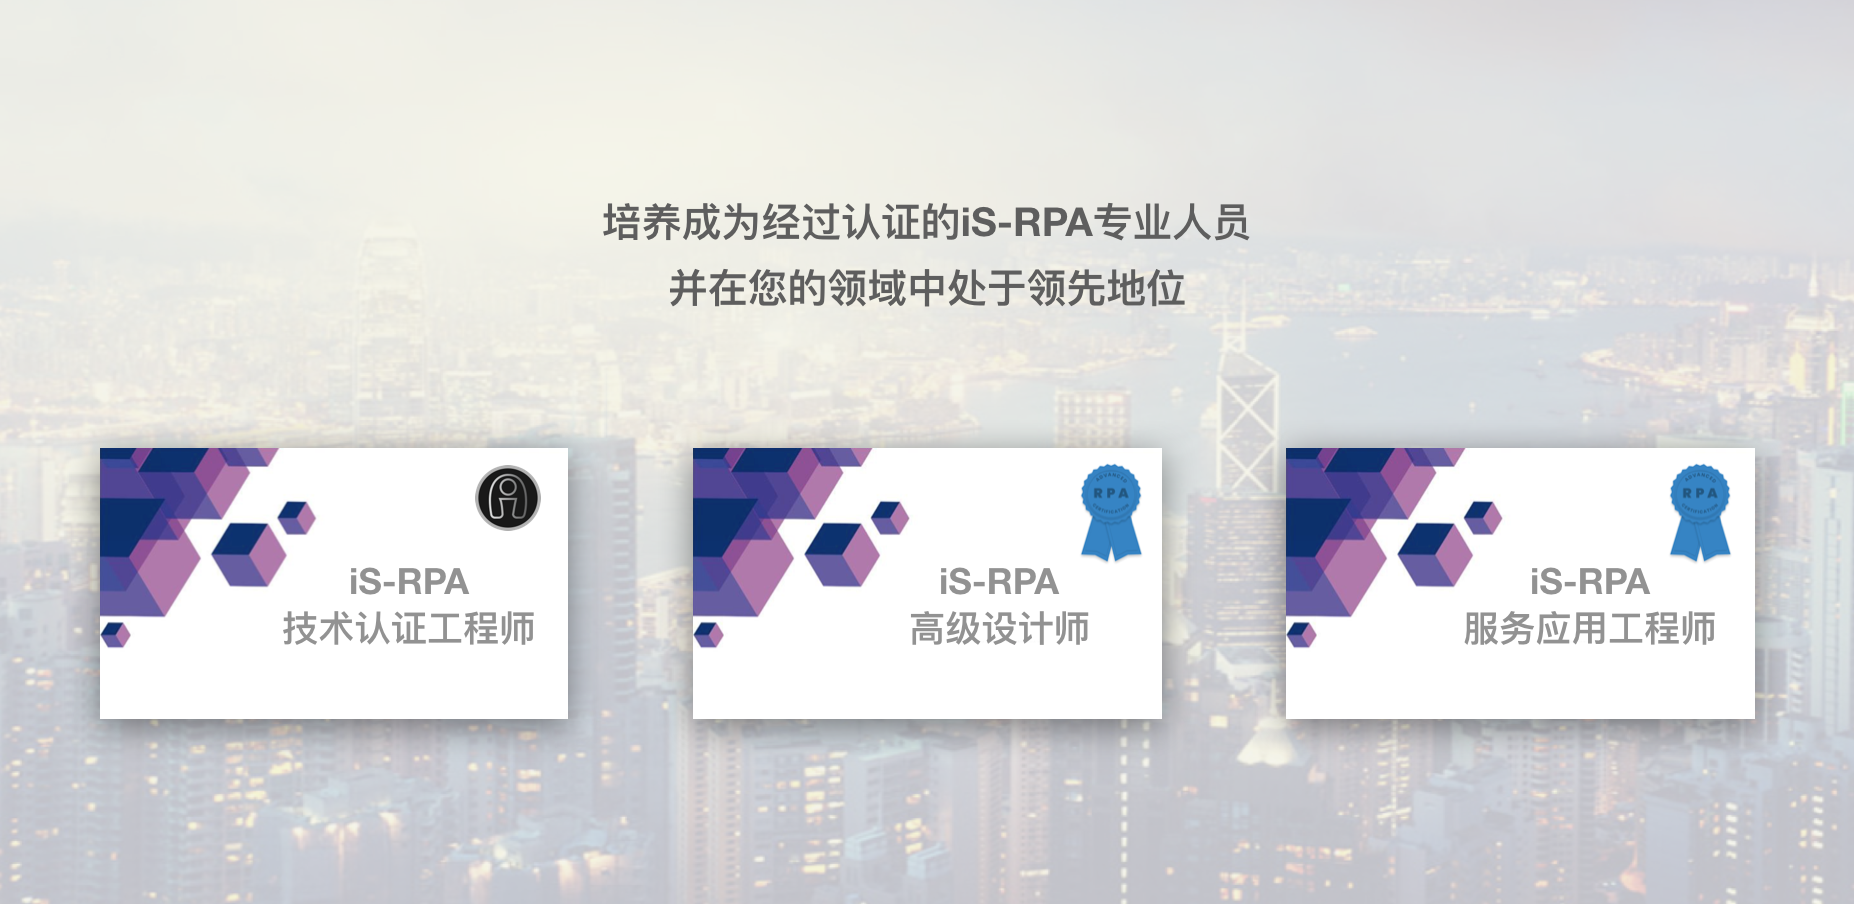 iS-RPA 高级设计师培训 - 南京 20190314 班 - 开班报名